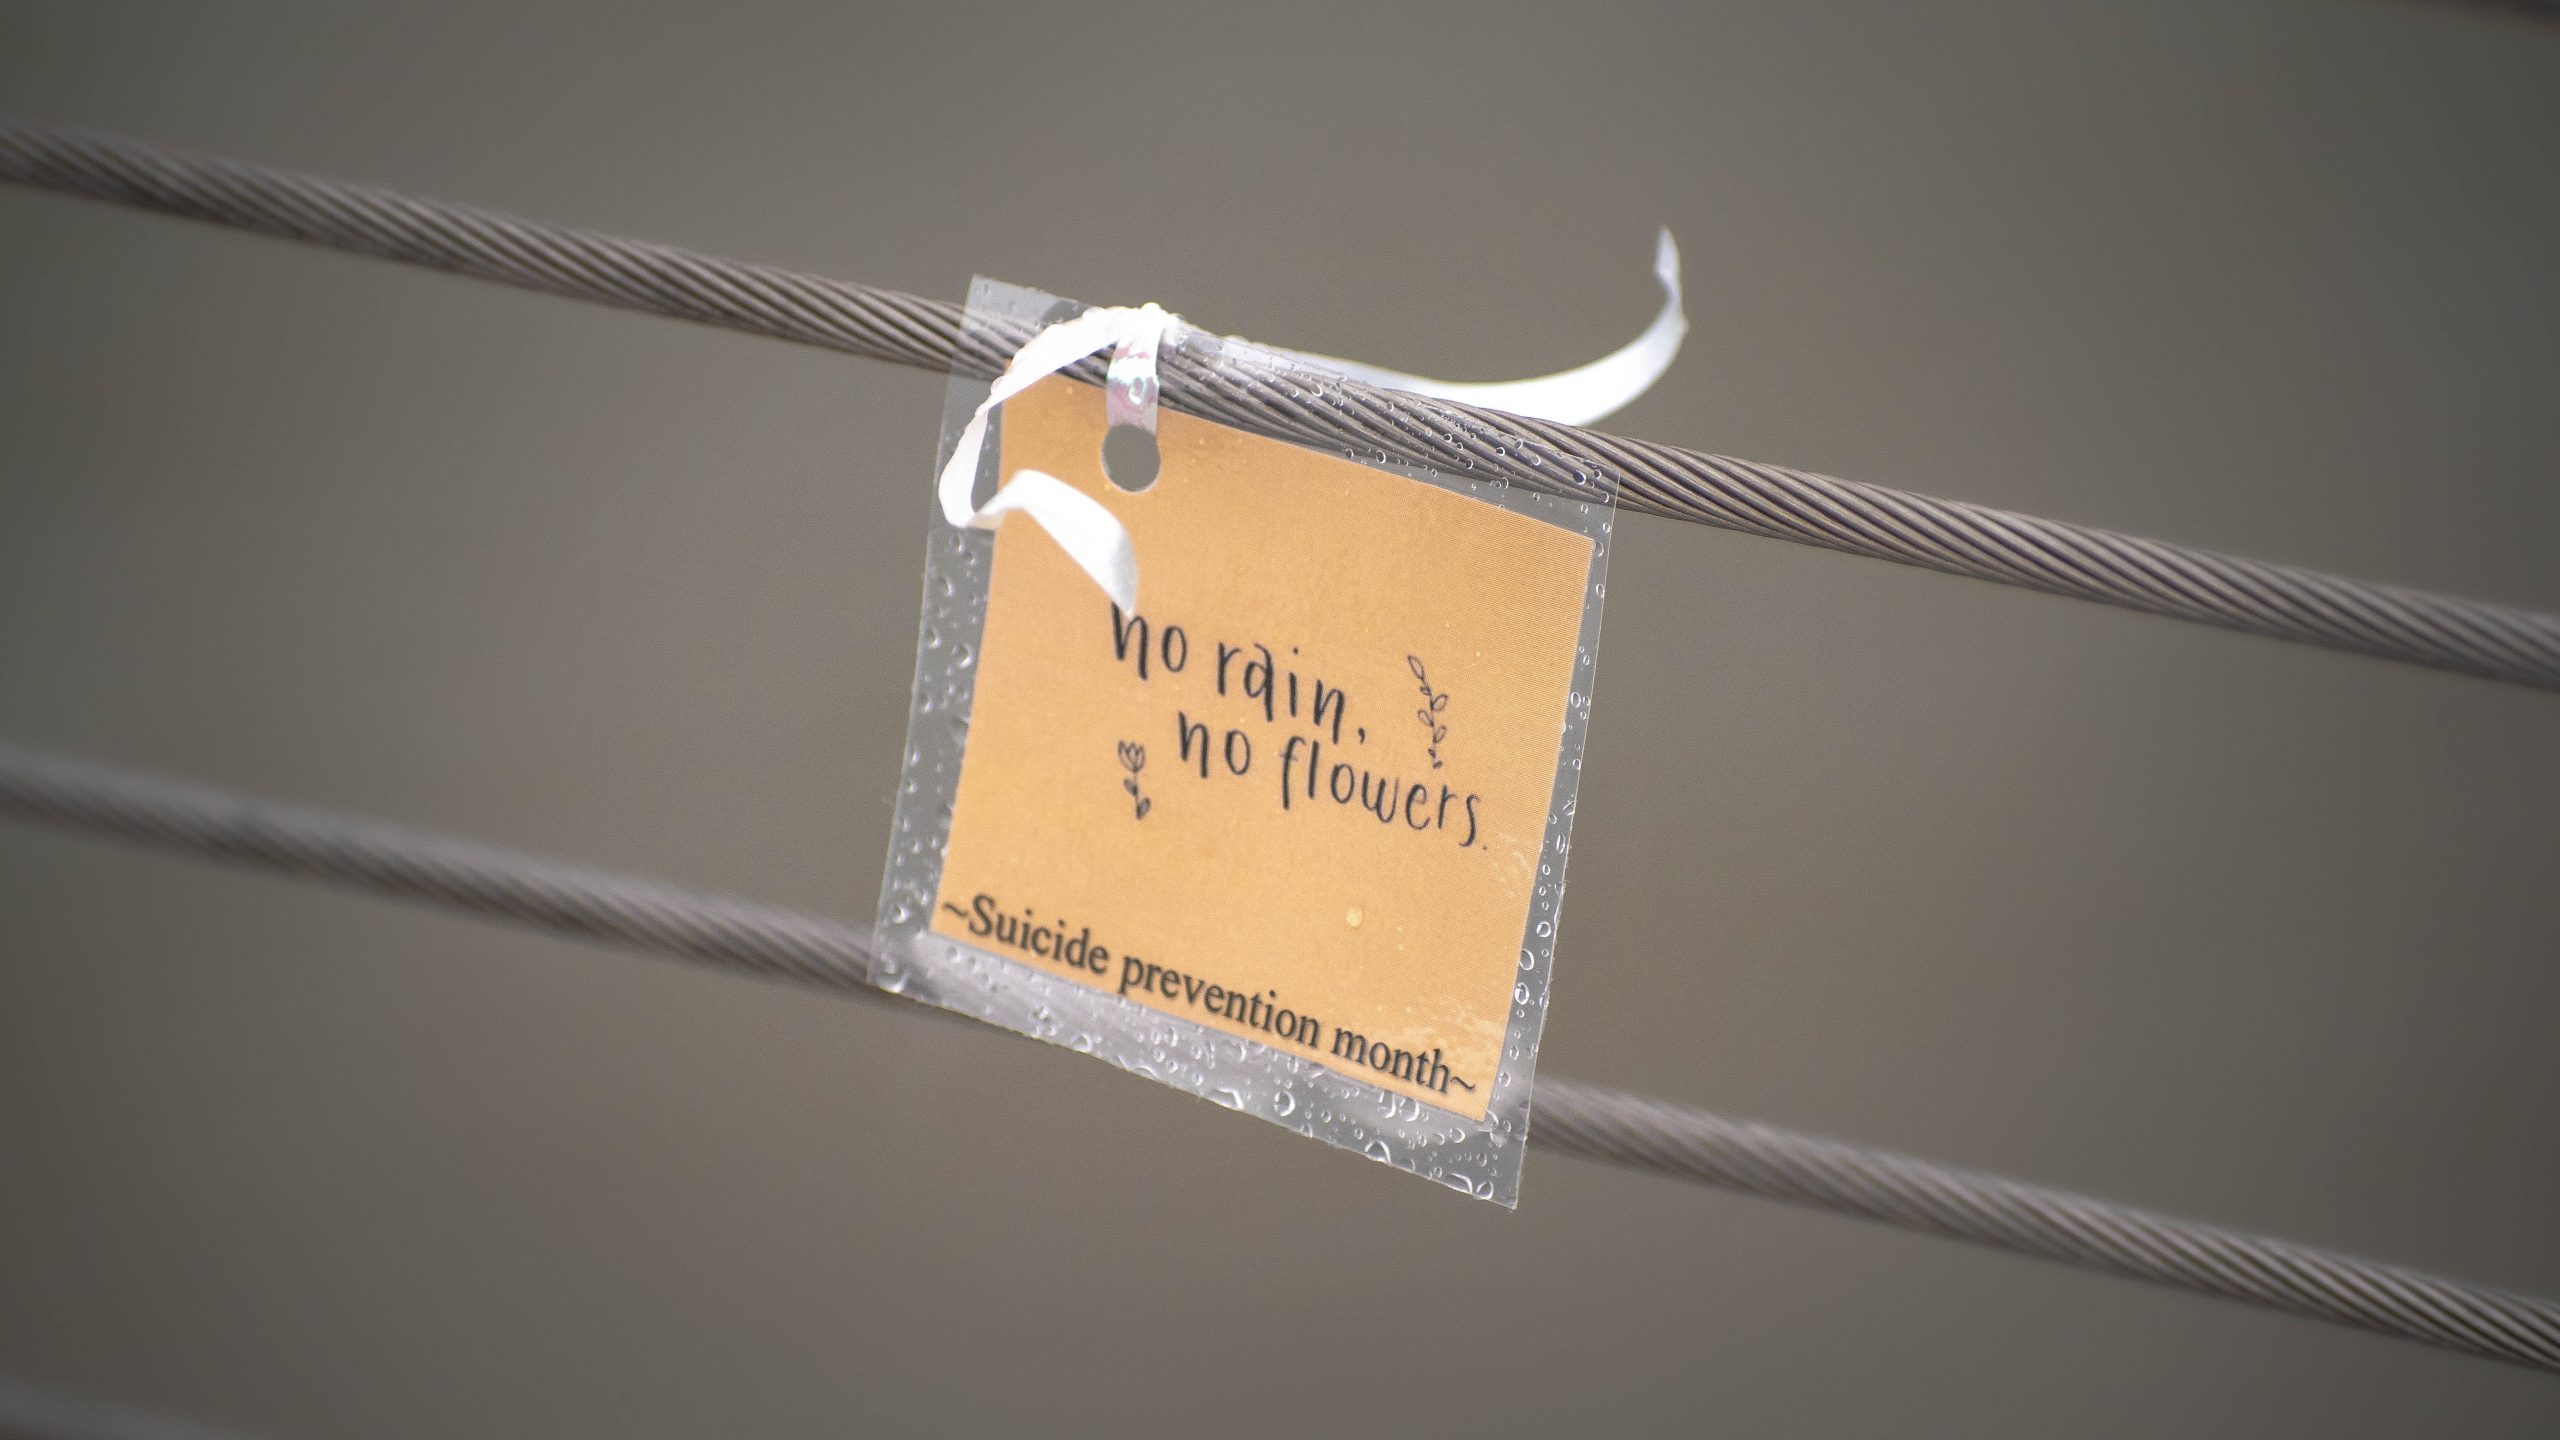 Imagen con una nota que dice 'No rain, no flowers - Suicide Prevention Month', transmitiendo un mensaje de esperanza y resiliencia en la prevención del suicidio